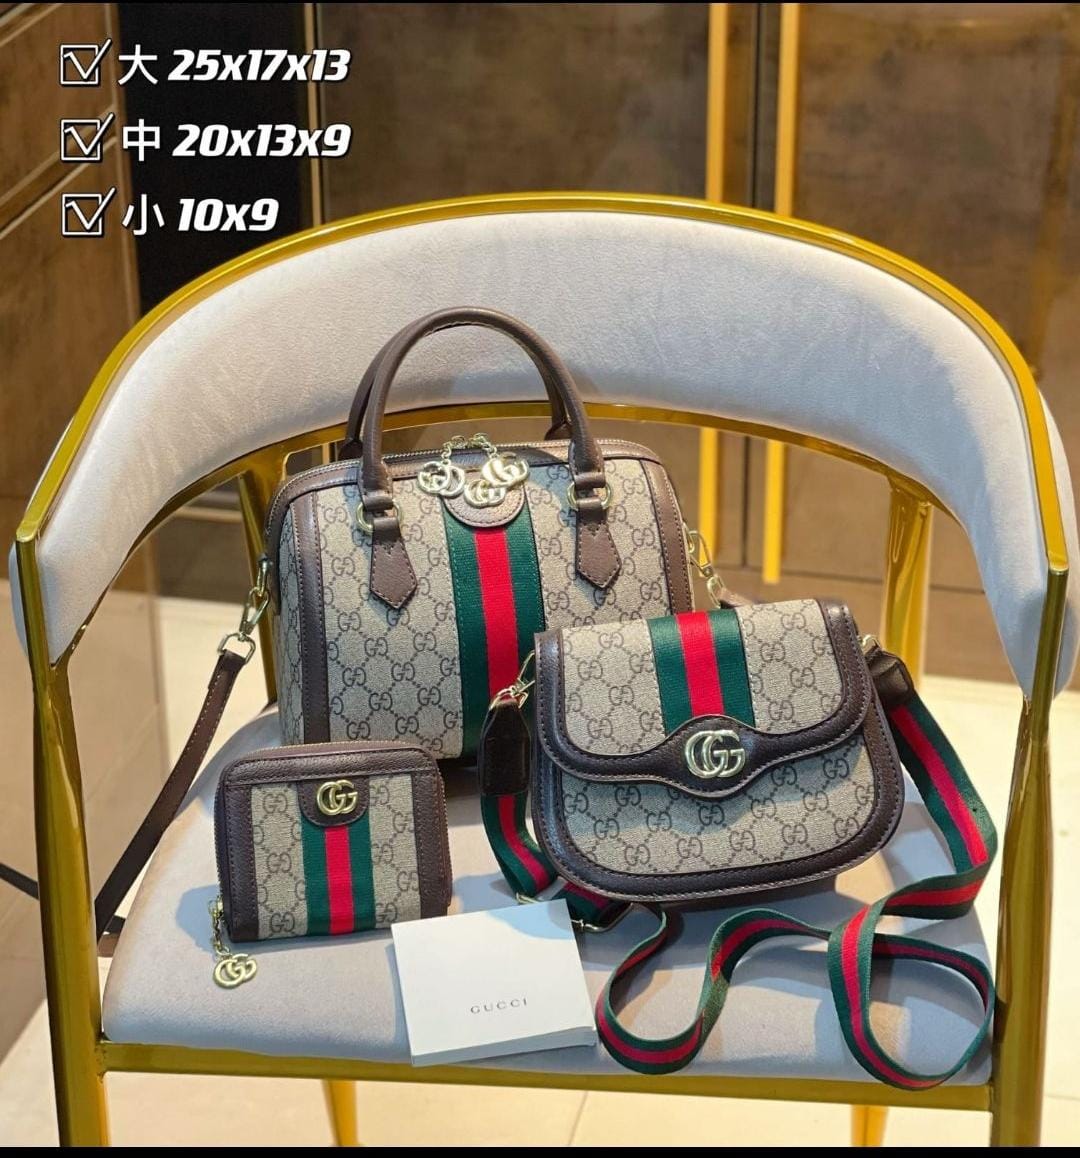 Gucci Handbags Set